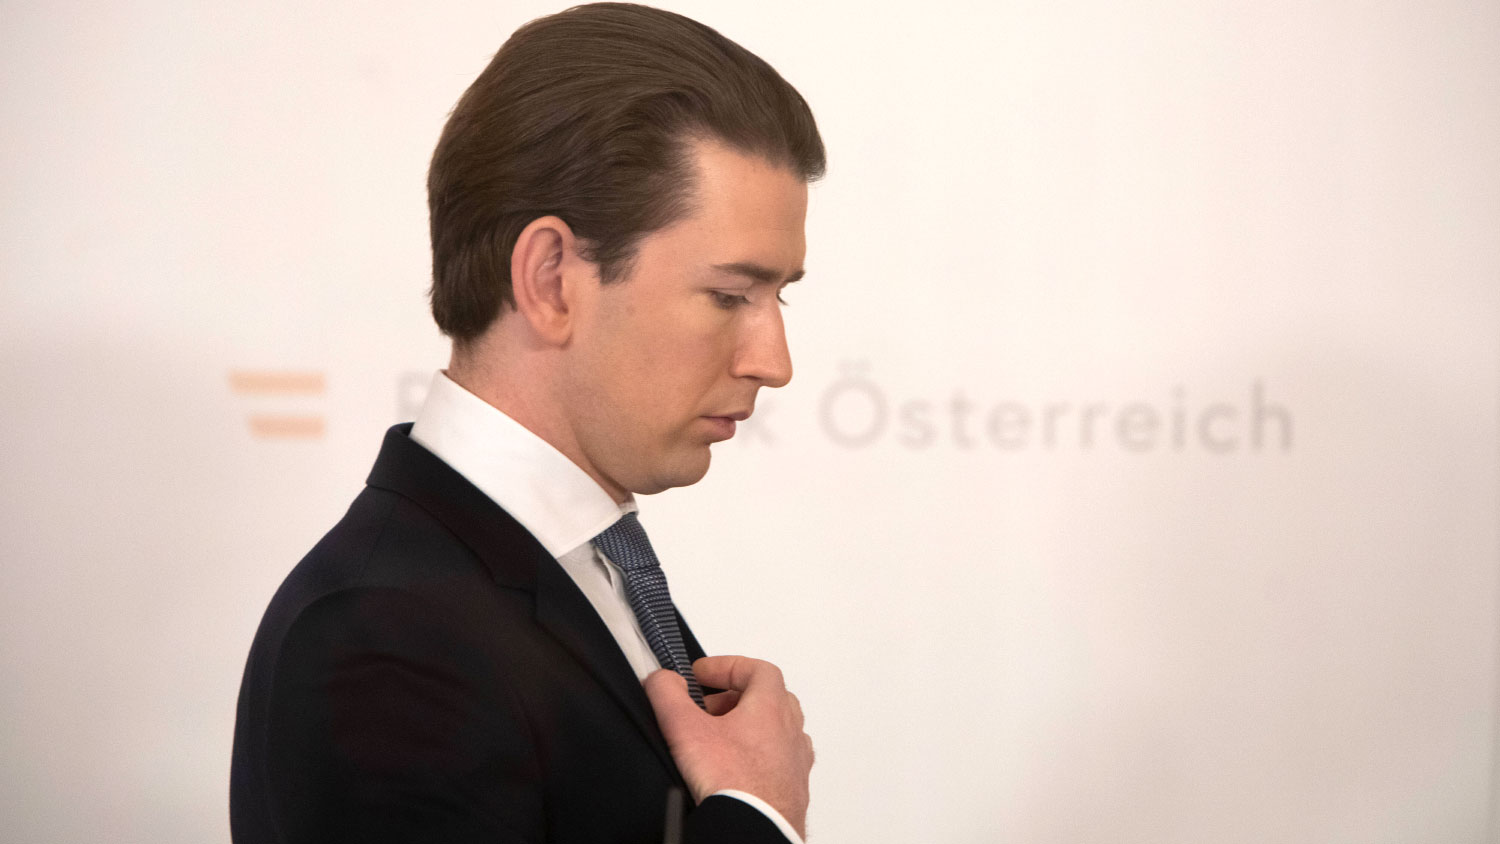 Политик австрии. Канцлер Австрии Себастьян Курц 2021. Австрия премьер-министр после курца. Себастьян Курц уехал из Австрии. Канцлер Австрии уходит в отставку.